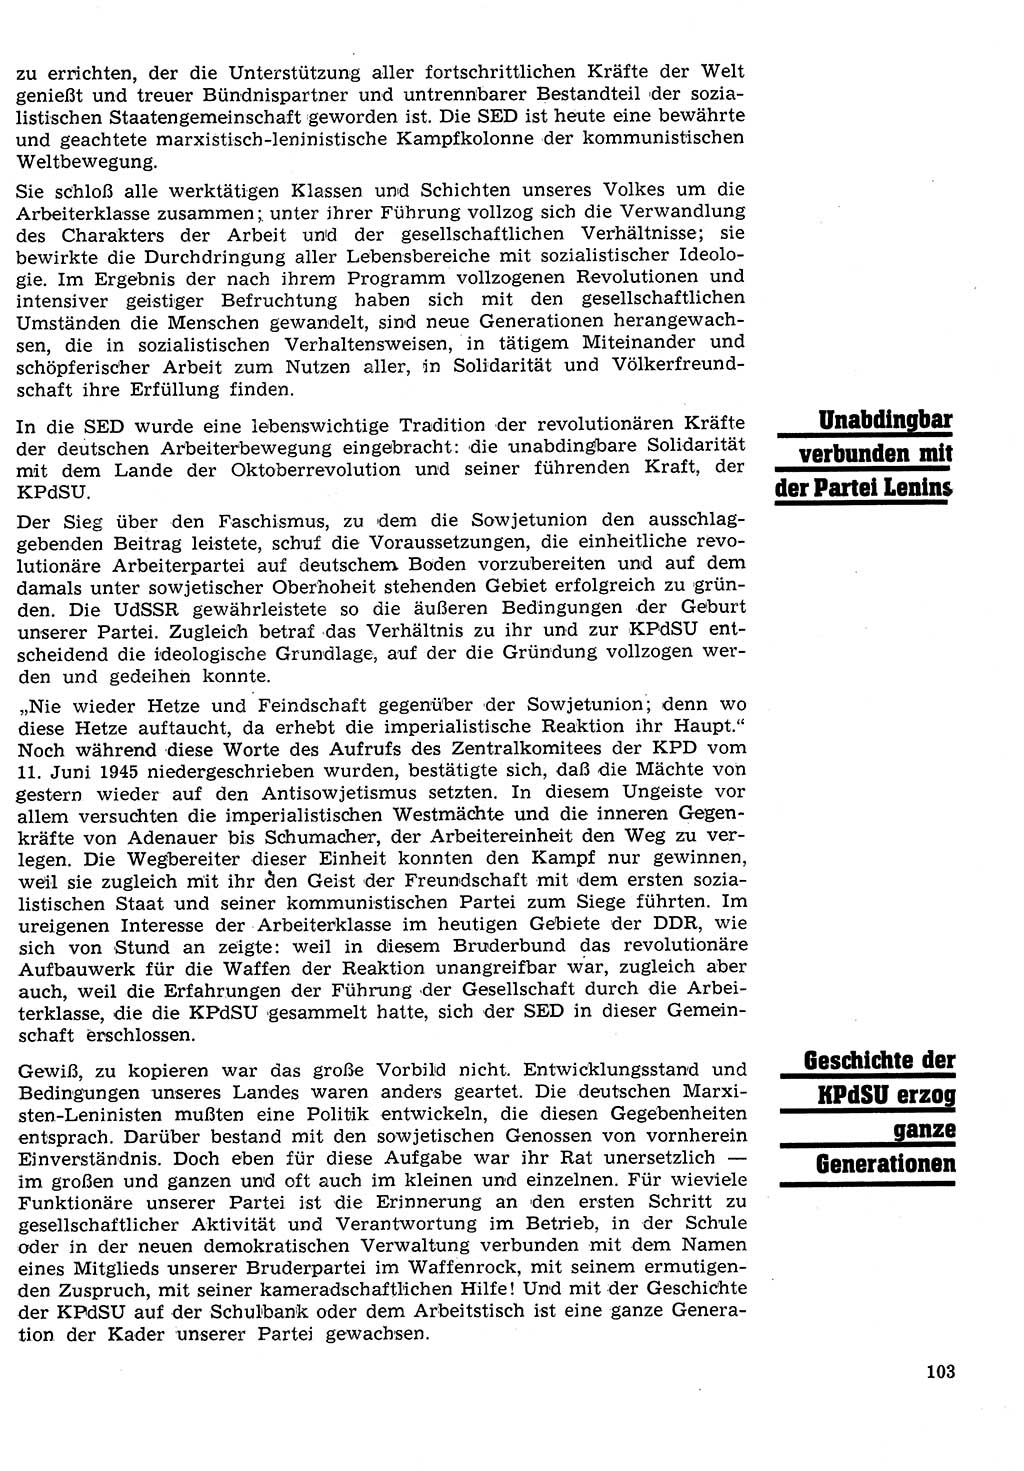 Neuer Weg (NW), Organ des Zentralkomitees (ZK) der SED (Sozialistische Einheitspartei Deutschlands) für Fragen des Parteilebens, 26. Jahrgang [Deutsche Demokratische Republik (DDR)] 1971, Seite 103 (NW ZK SED DDR 1971, S. 103)